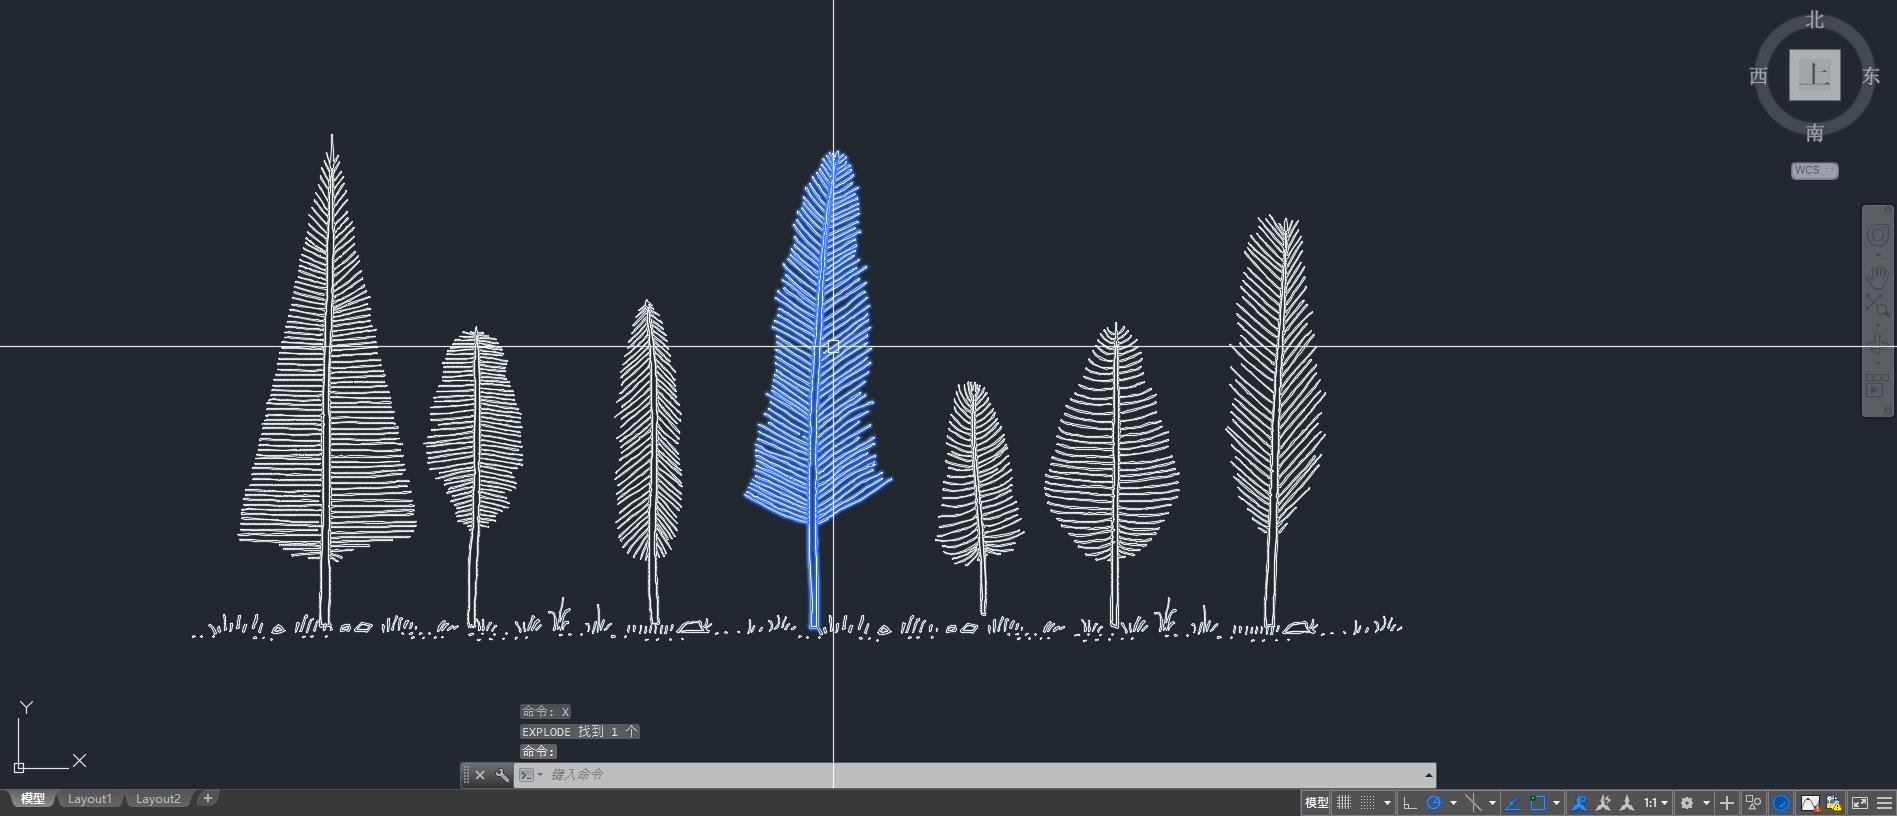 羽毛树矢量图集,羽毛树,矢量图集,创意树矢量图集,建筑师的灵感,让设计更有趣